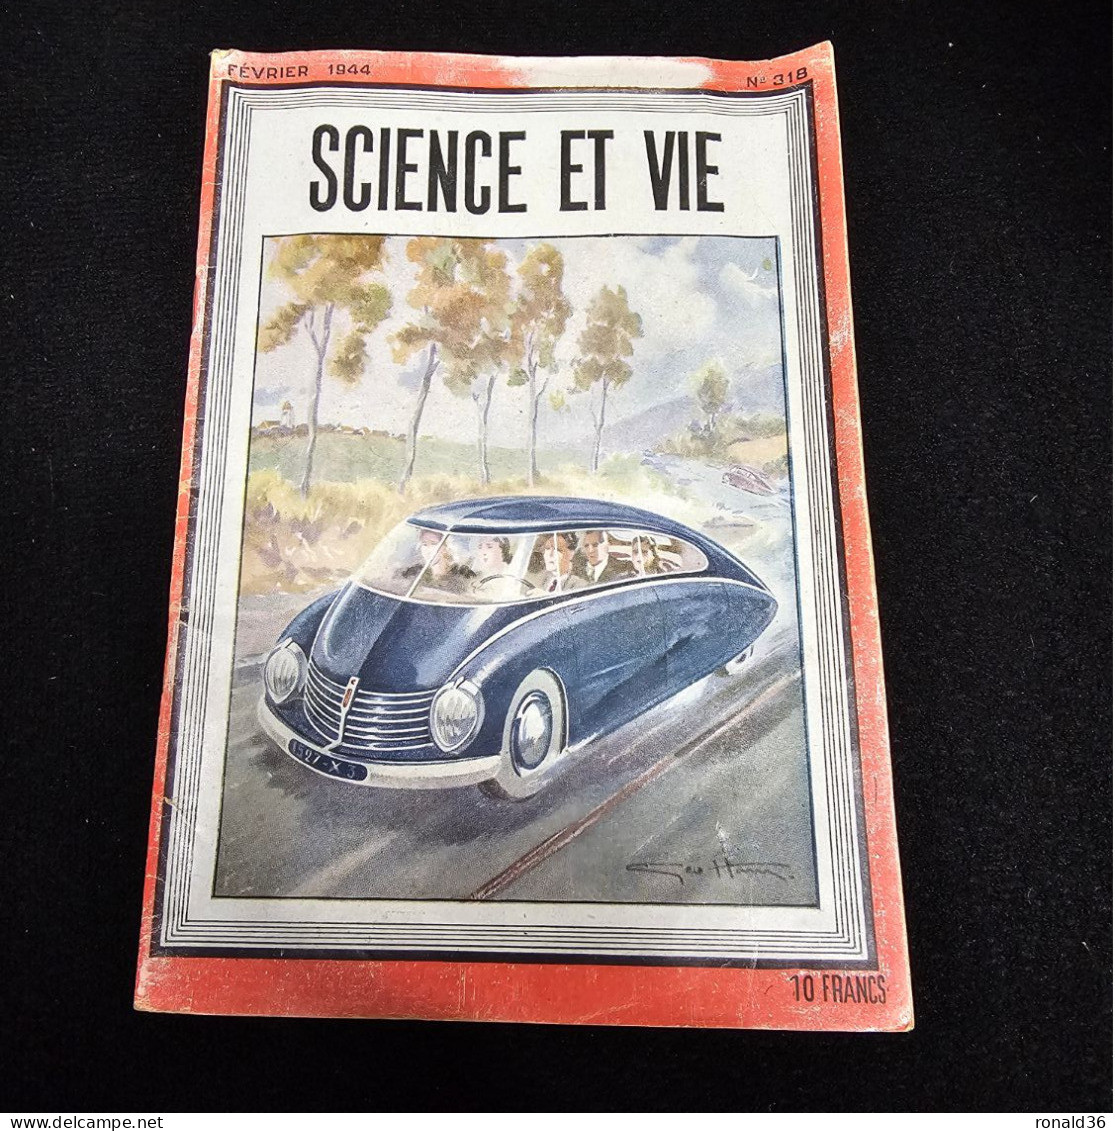 Science Et Vie  1944 énergie électrique Univers Sillage Avion Voiture Automobile Tracta Chaleur Terrestre Divers Pub - 1900 - 1949